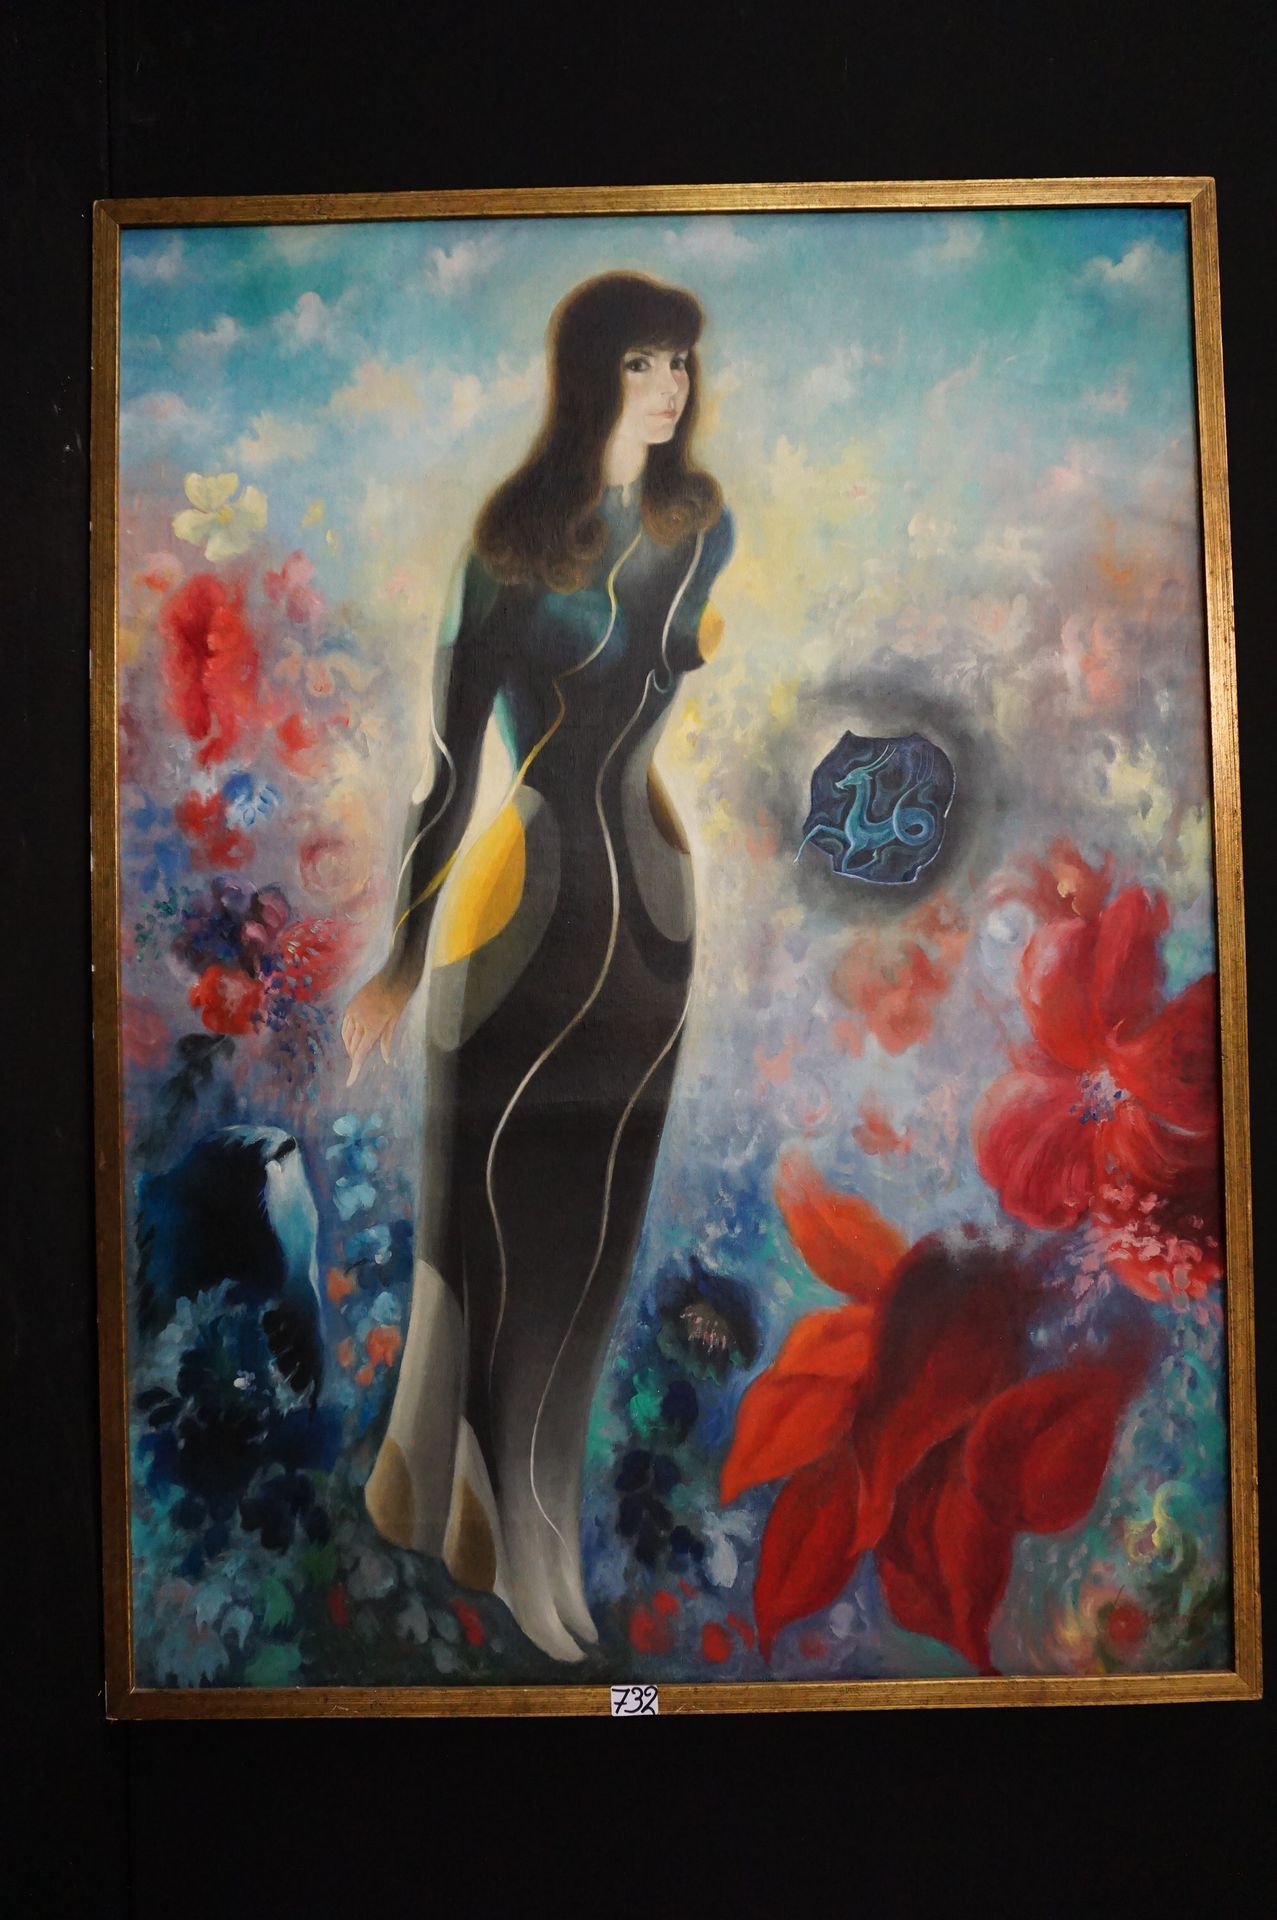 FRANCINEY "Junge Frau" - Öl auf Leinwand - Signiert - 130 x 97 cm